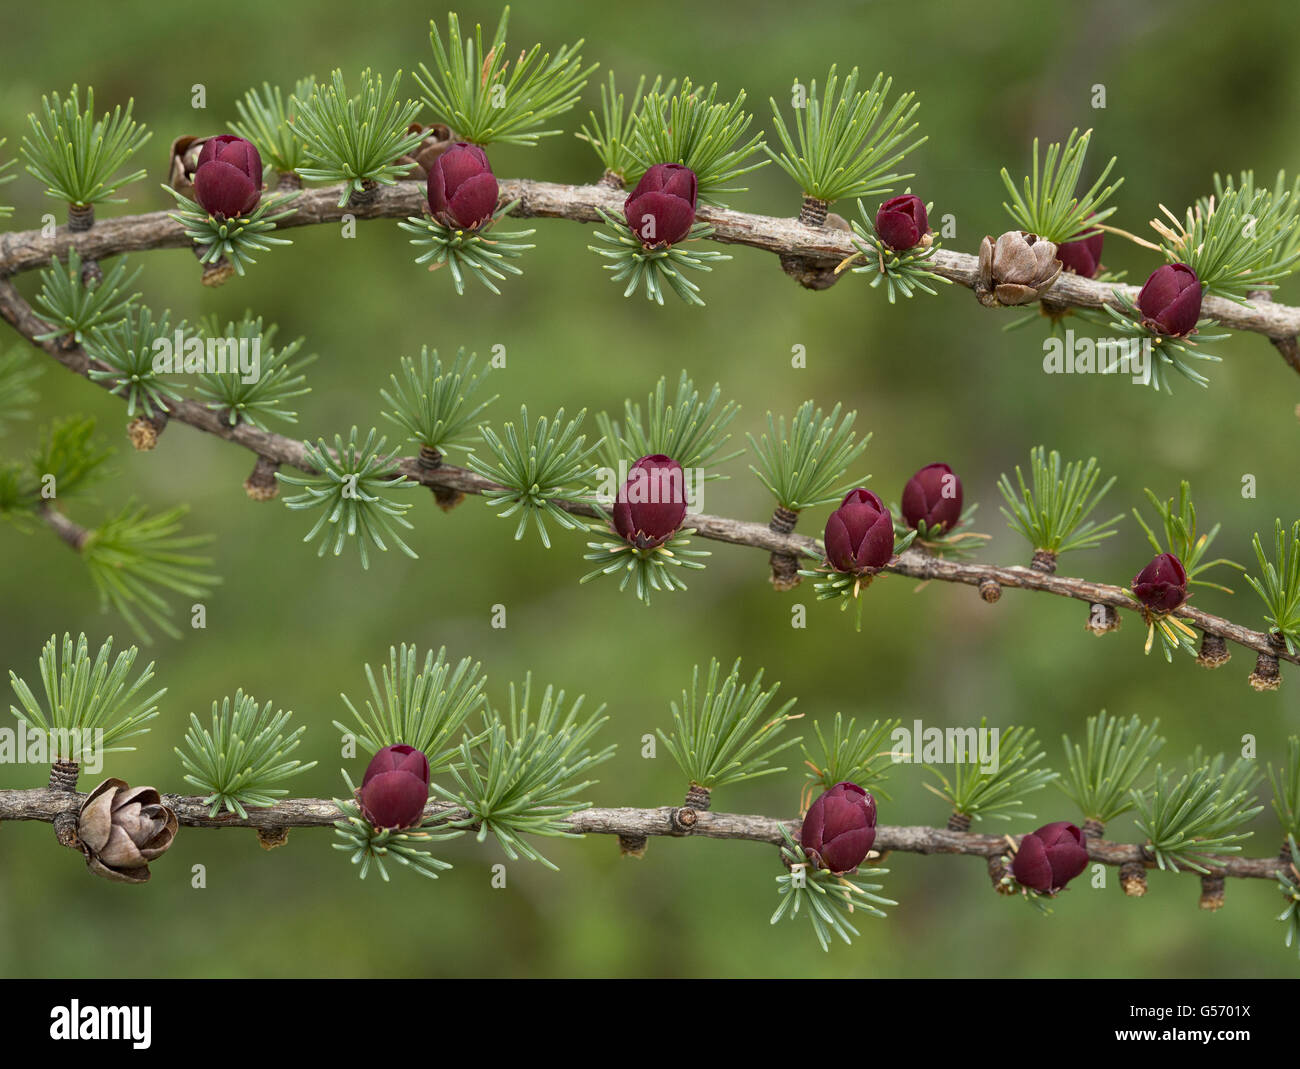 Tamarack (Larix laricina) close-up of female cones and flowers, Newfoundland, Canada, July Stock Photo